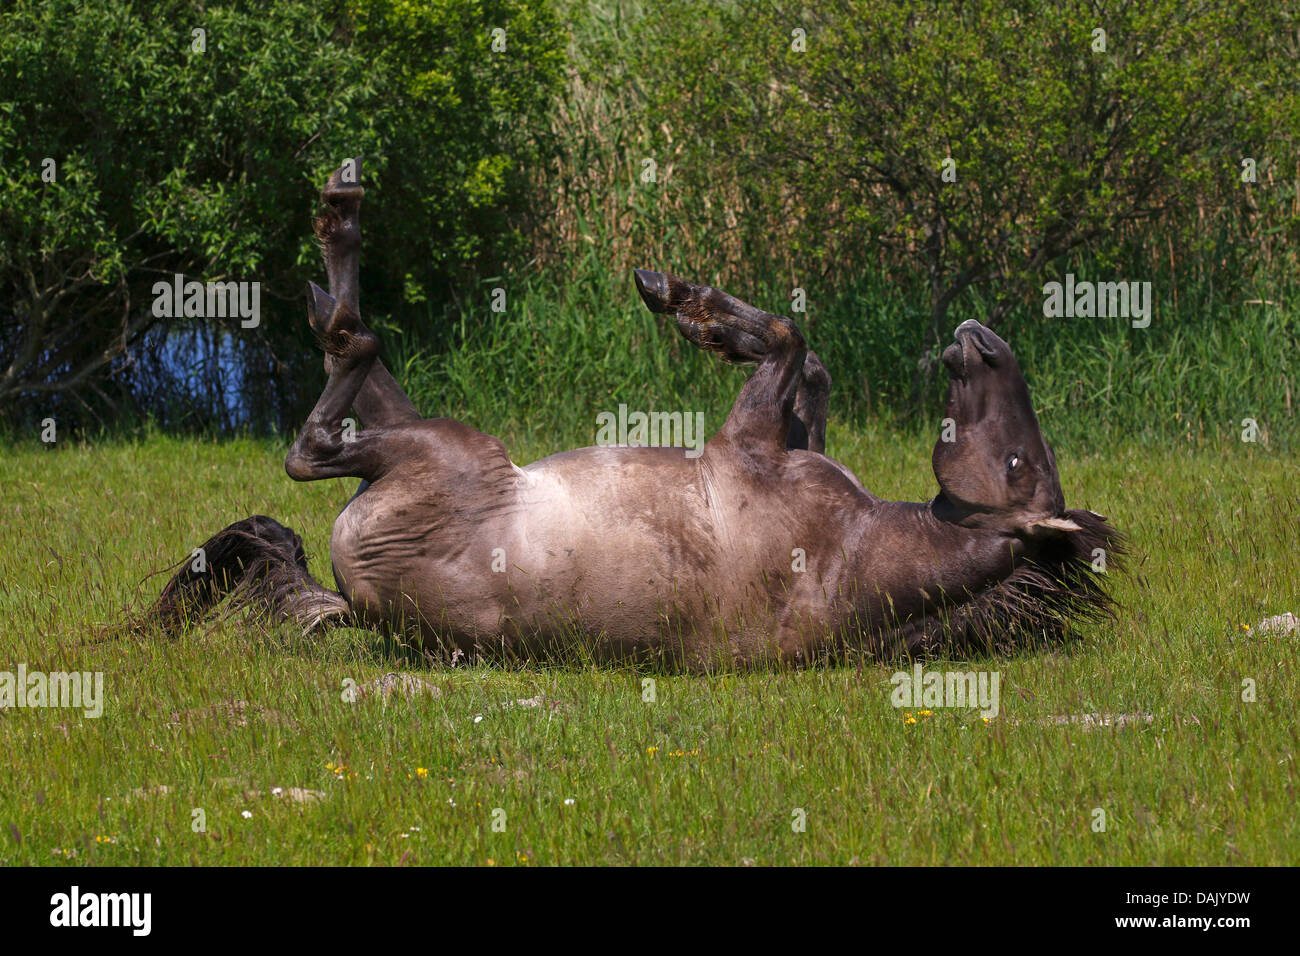 Konik Horse or Polish Primitive Horse,Tarpan breeding back (Equus przewalskii f caballus) lying on its back Stock Photo